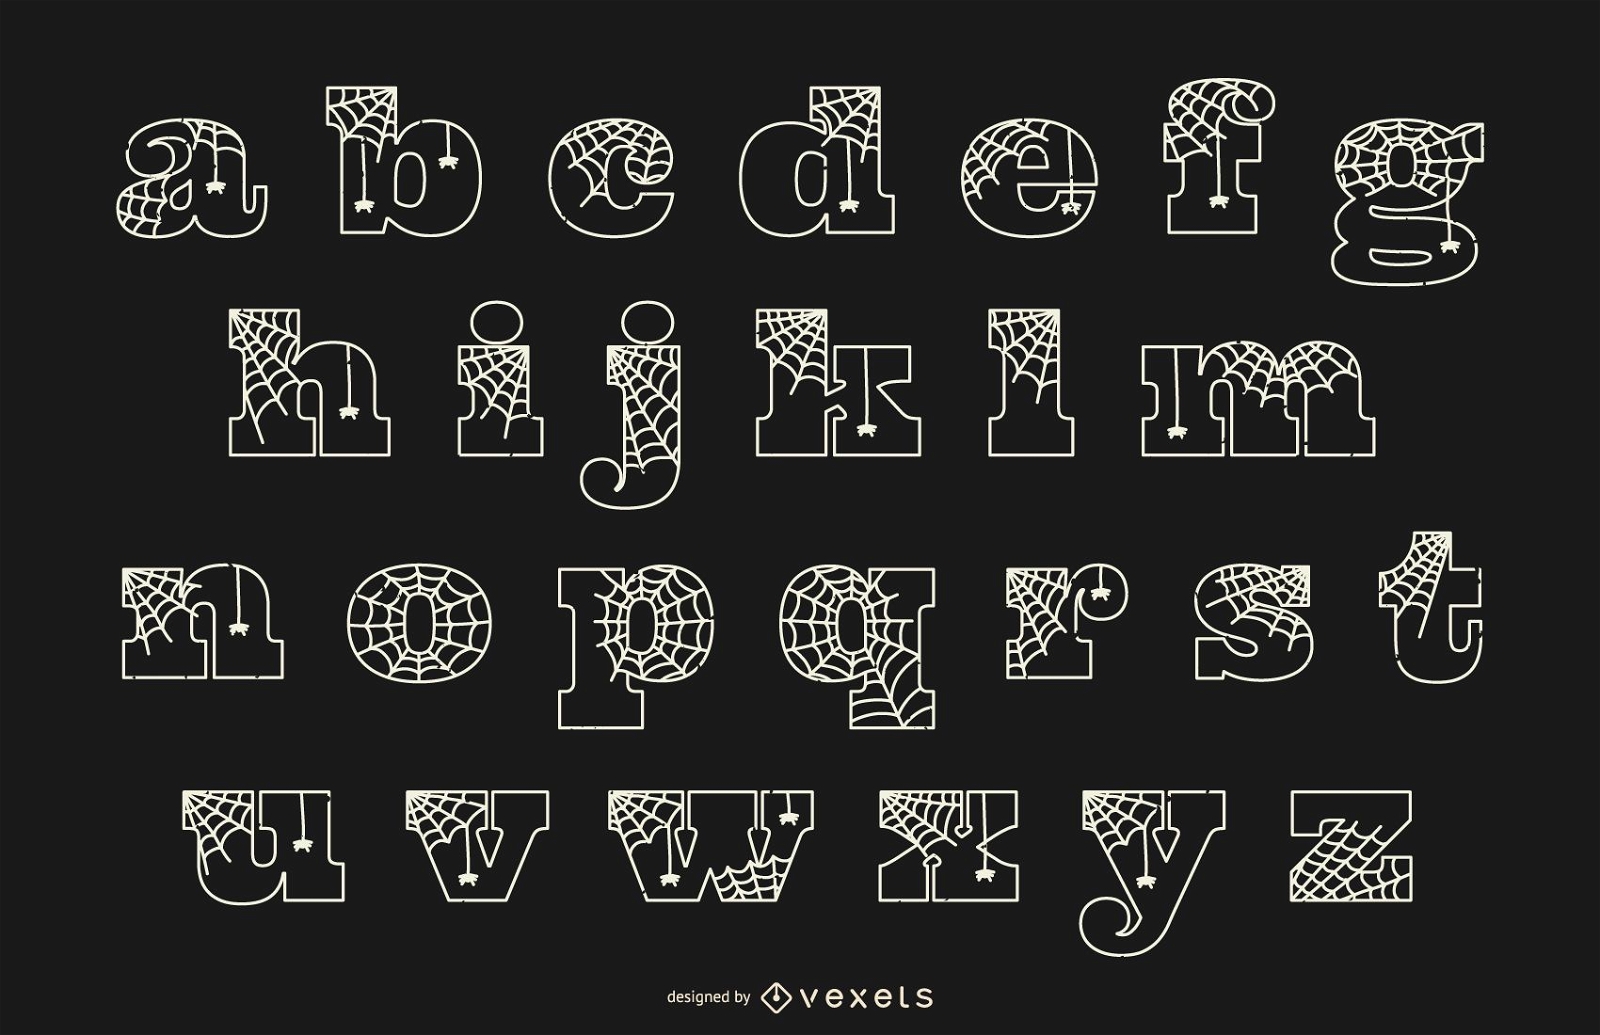 Linha de aranha em letras minúsculas do alfabeto